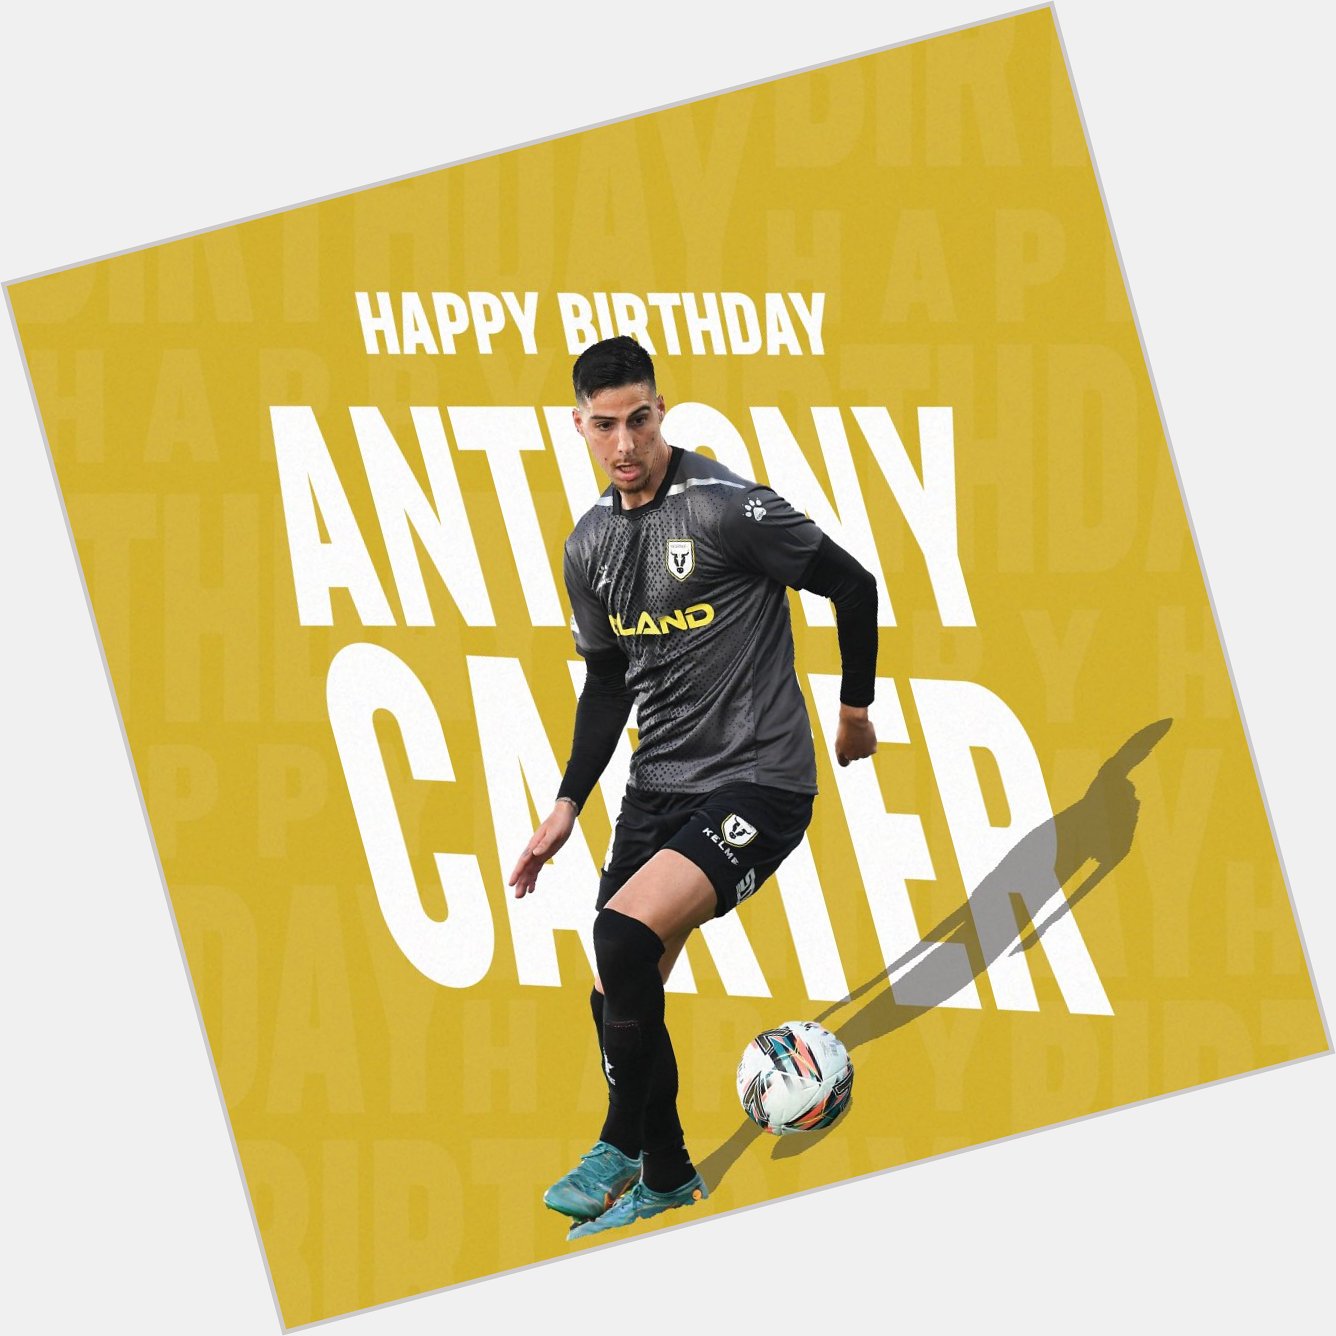 Happy Birthday Anthony Carter!  